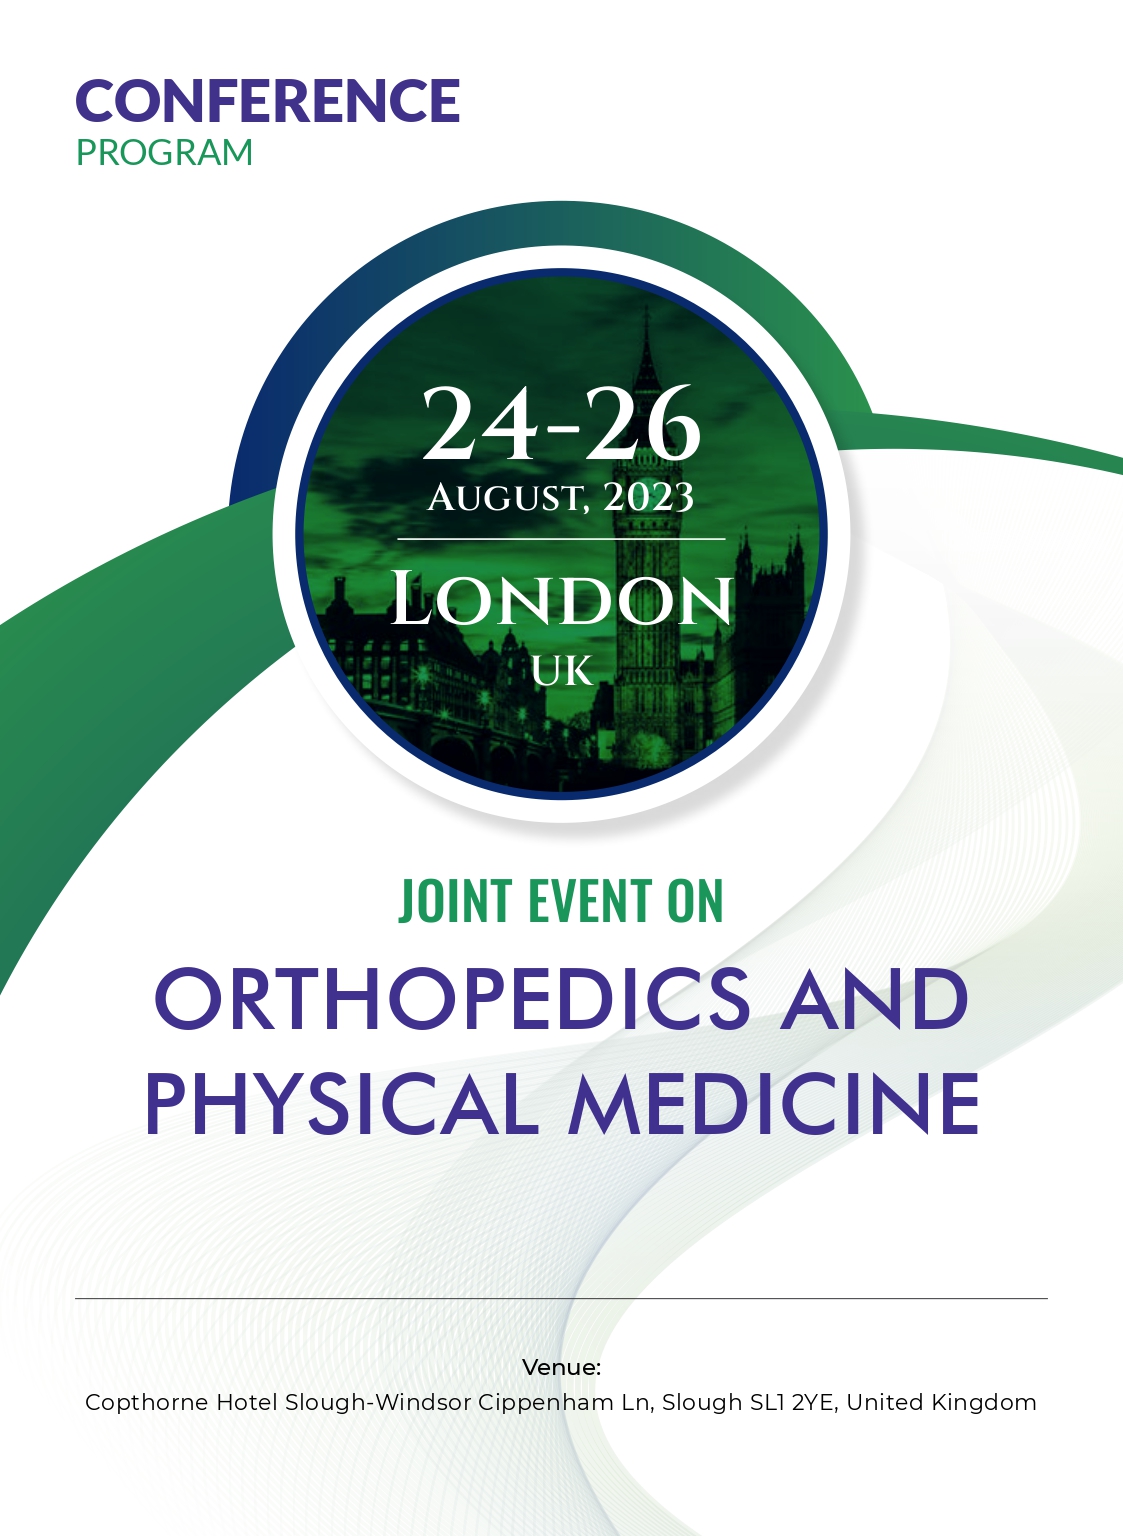 World Orthopedics Conference | London, UK Program